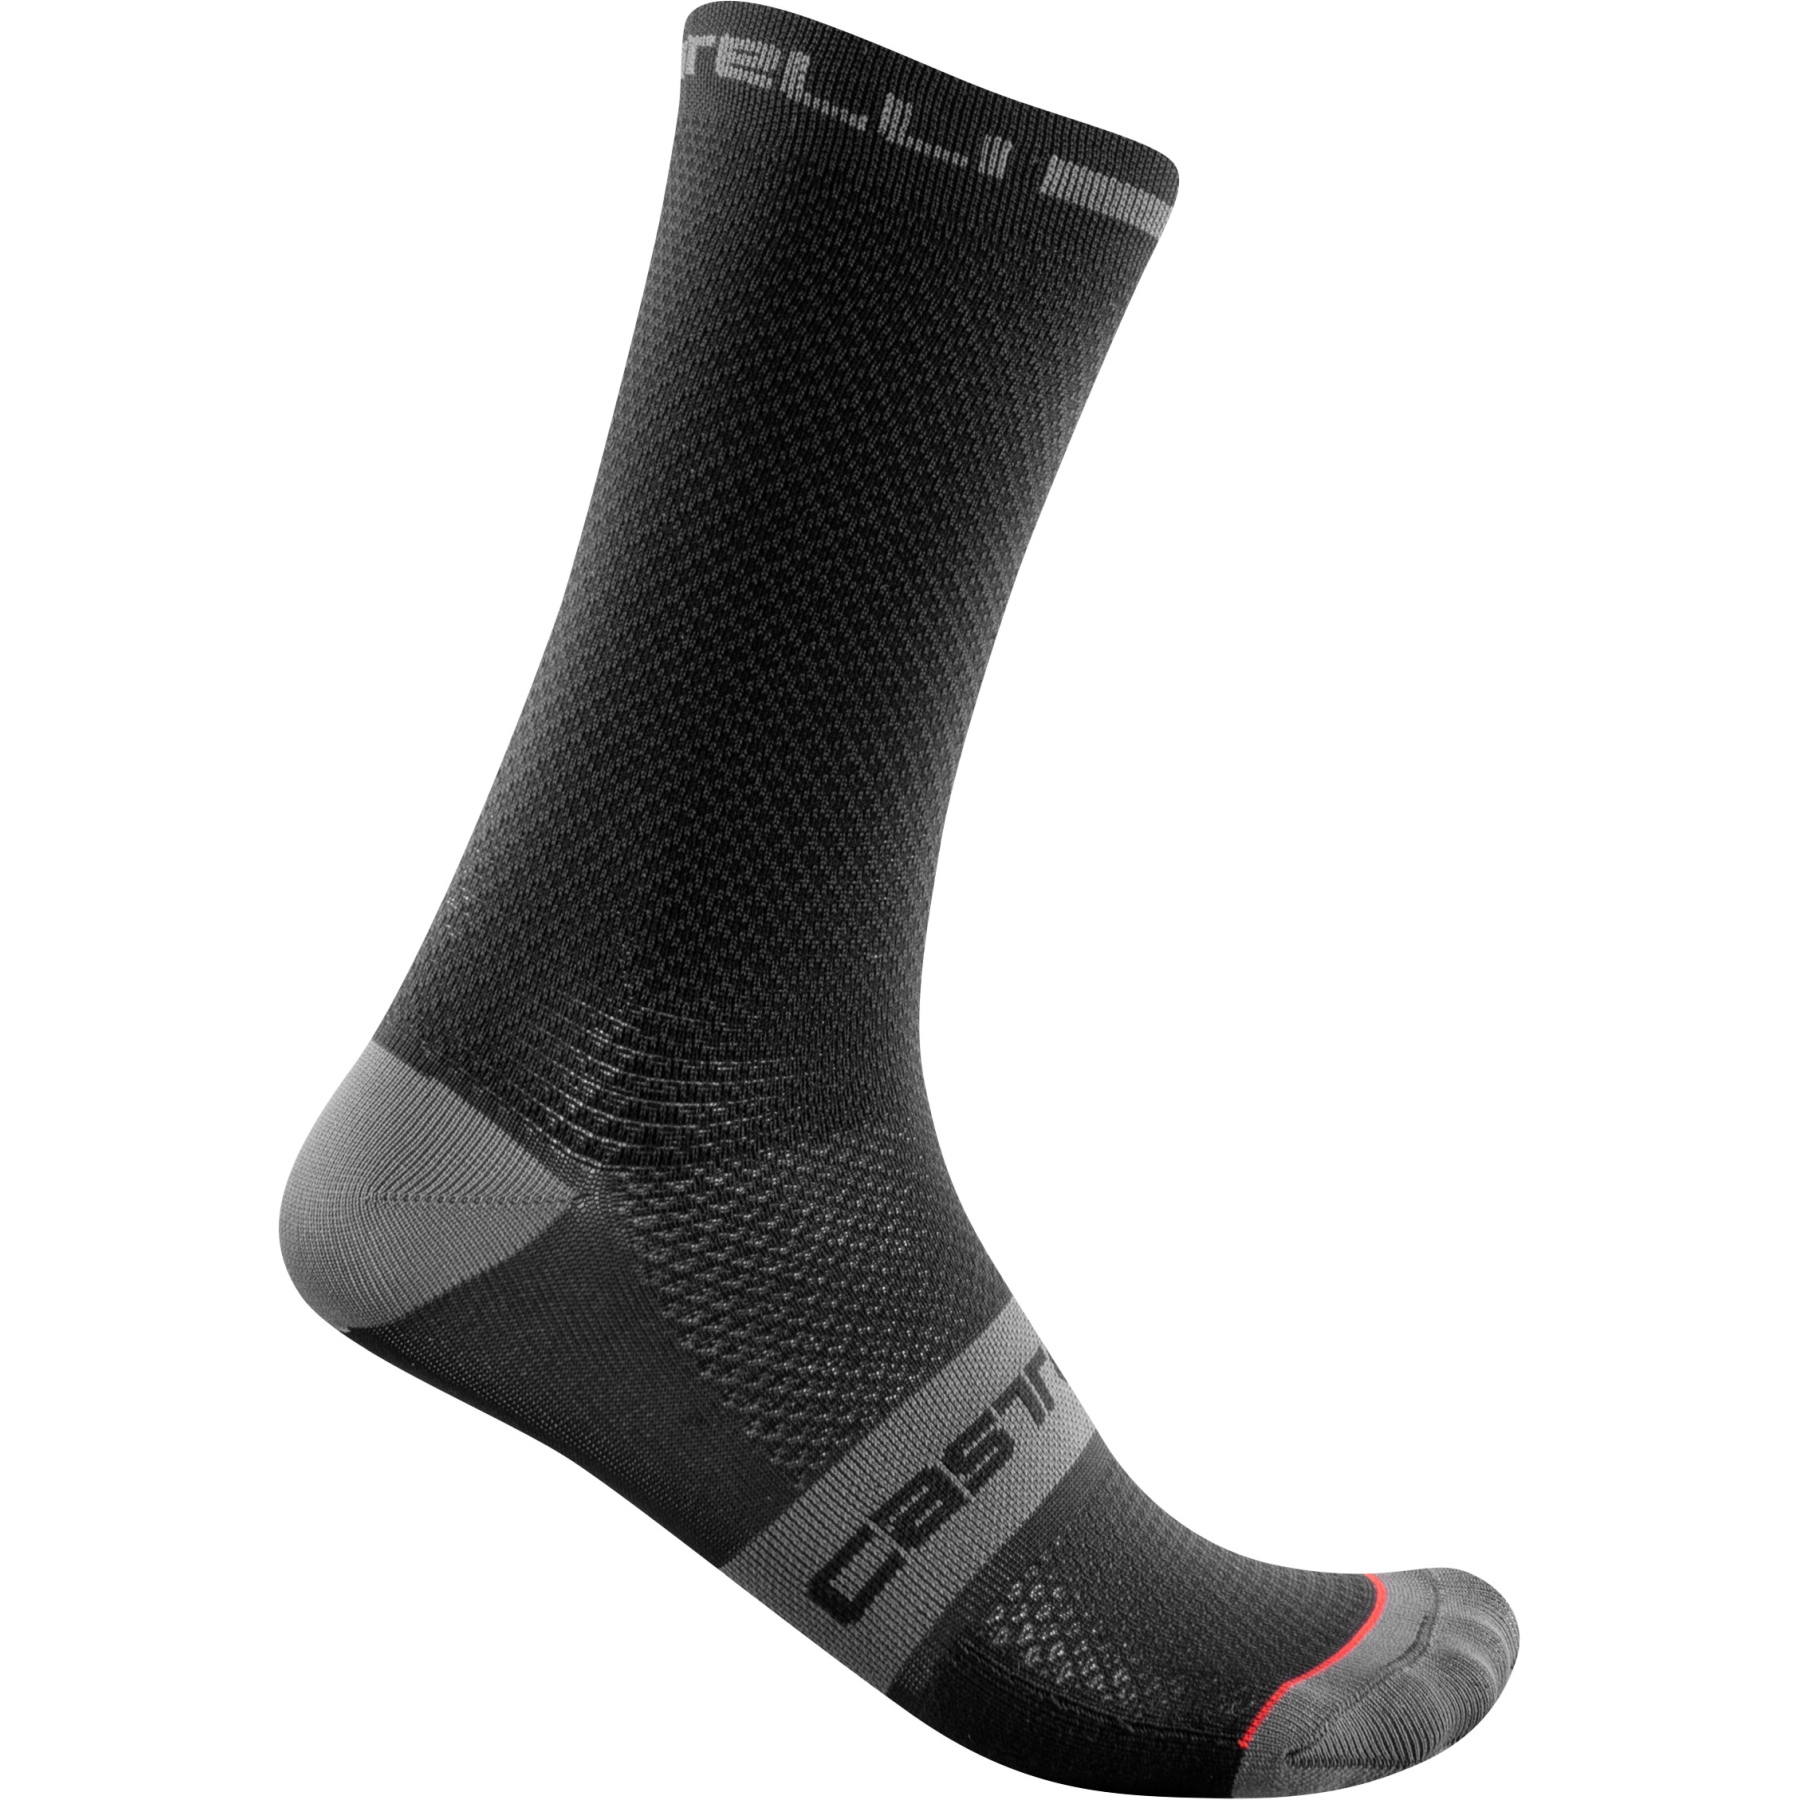 Produktbild von Castelli Superleggera T 18 Socken Herren - schwarz 010